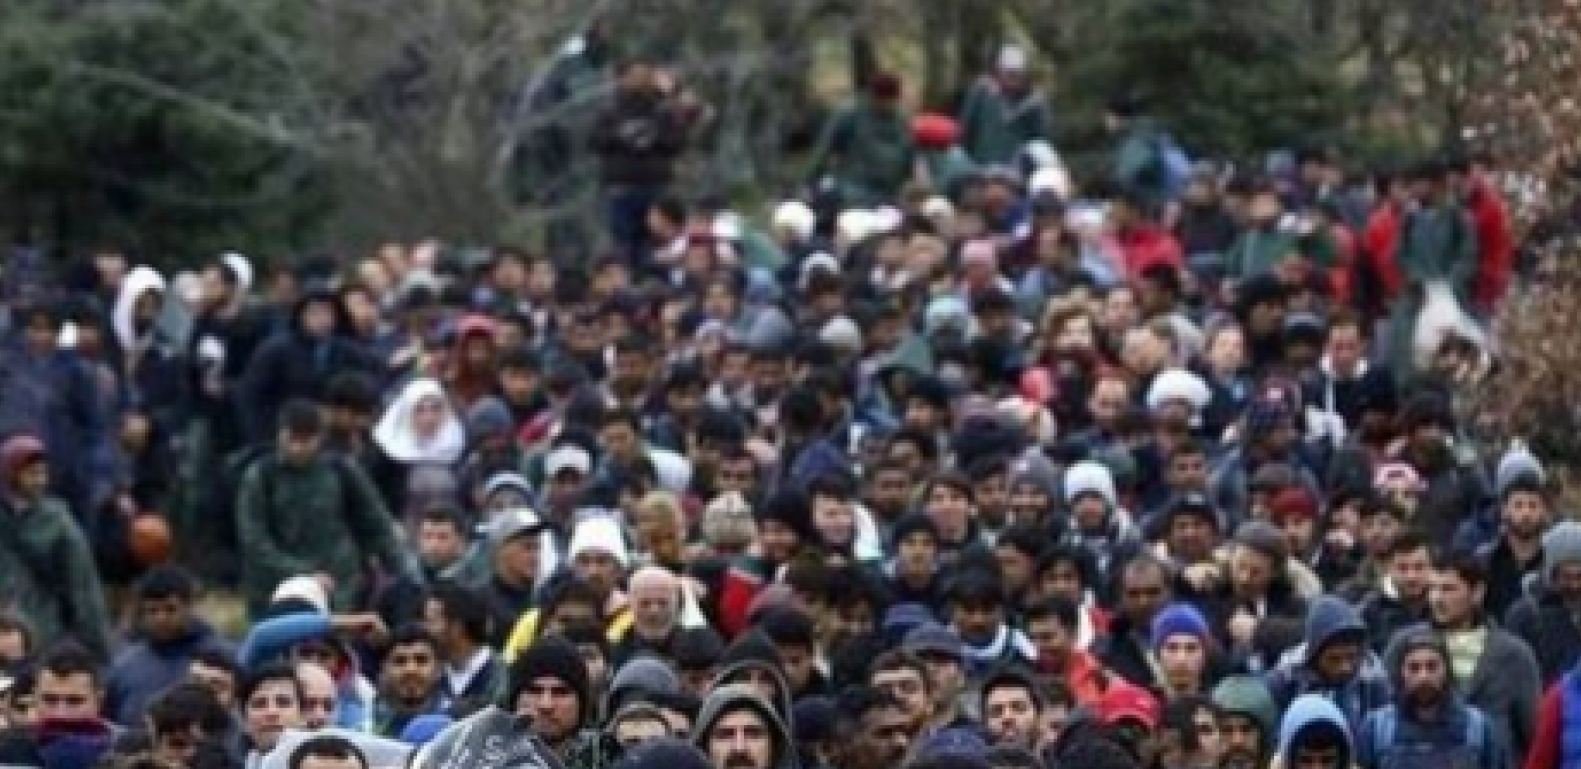 UDRUŽENI U KRIJUMČARENJU LJUDI Srbi, Hrvati i Slovenci prokrijumčarili 1.200 migranata!